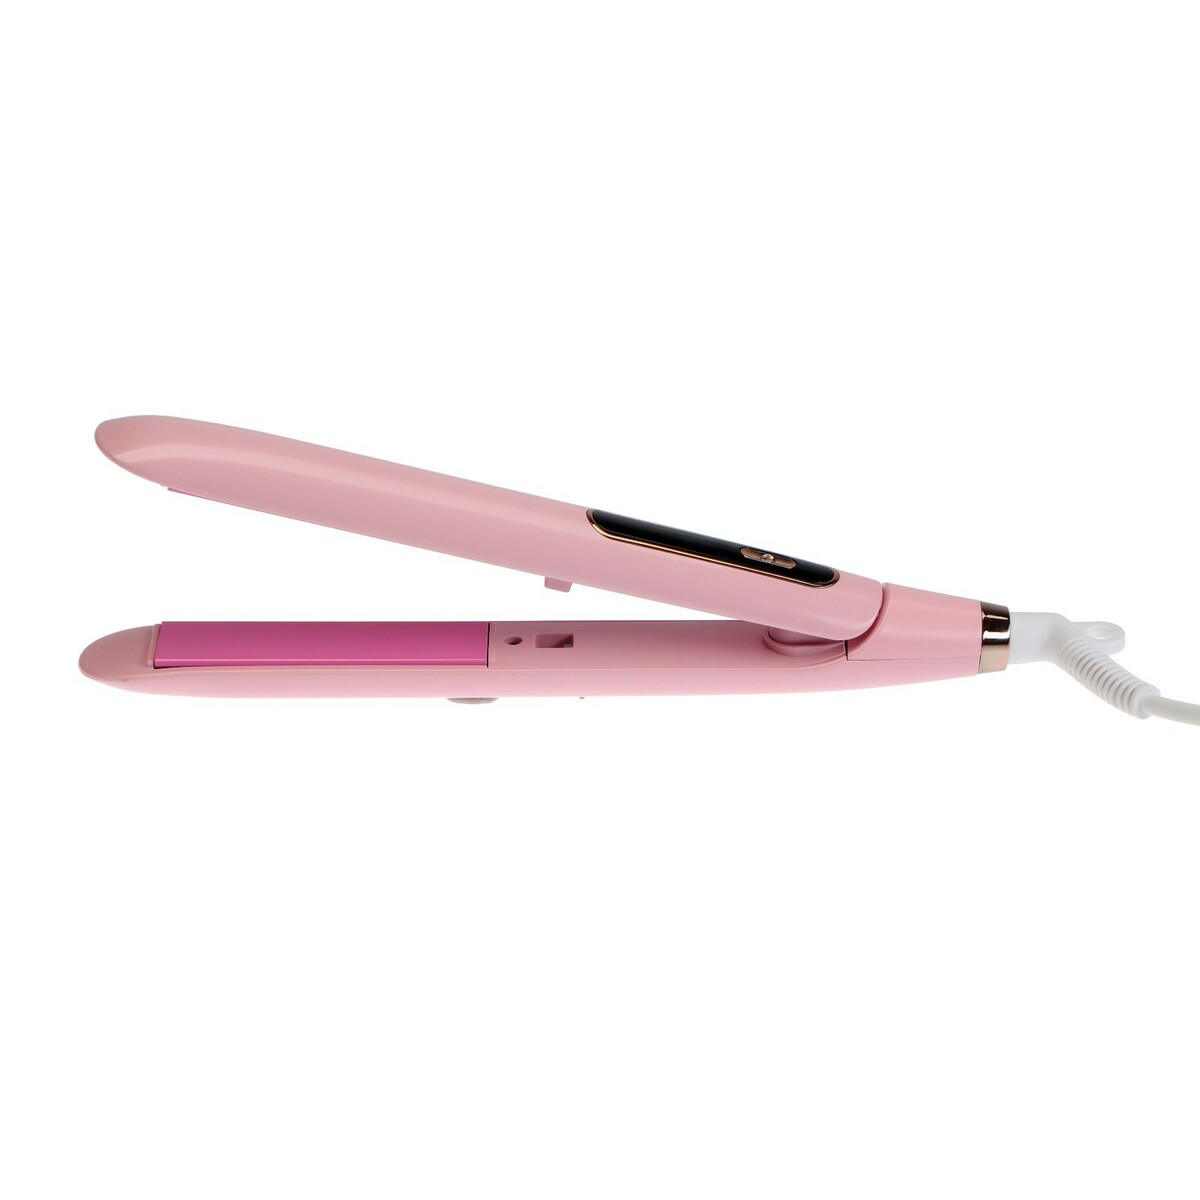 Выпрямитель для волос luazon lw-37, 45 вт, керамическое покрытие, до 230°c, розовый pioneer выпрямитель для волос hs 10118